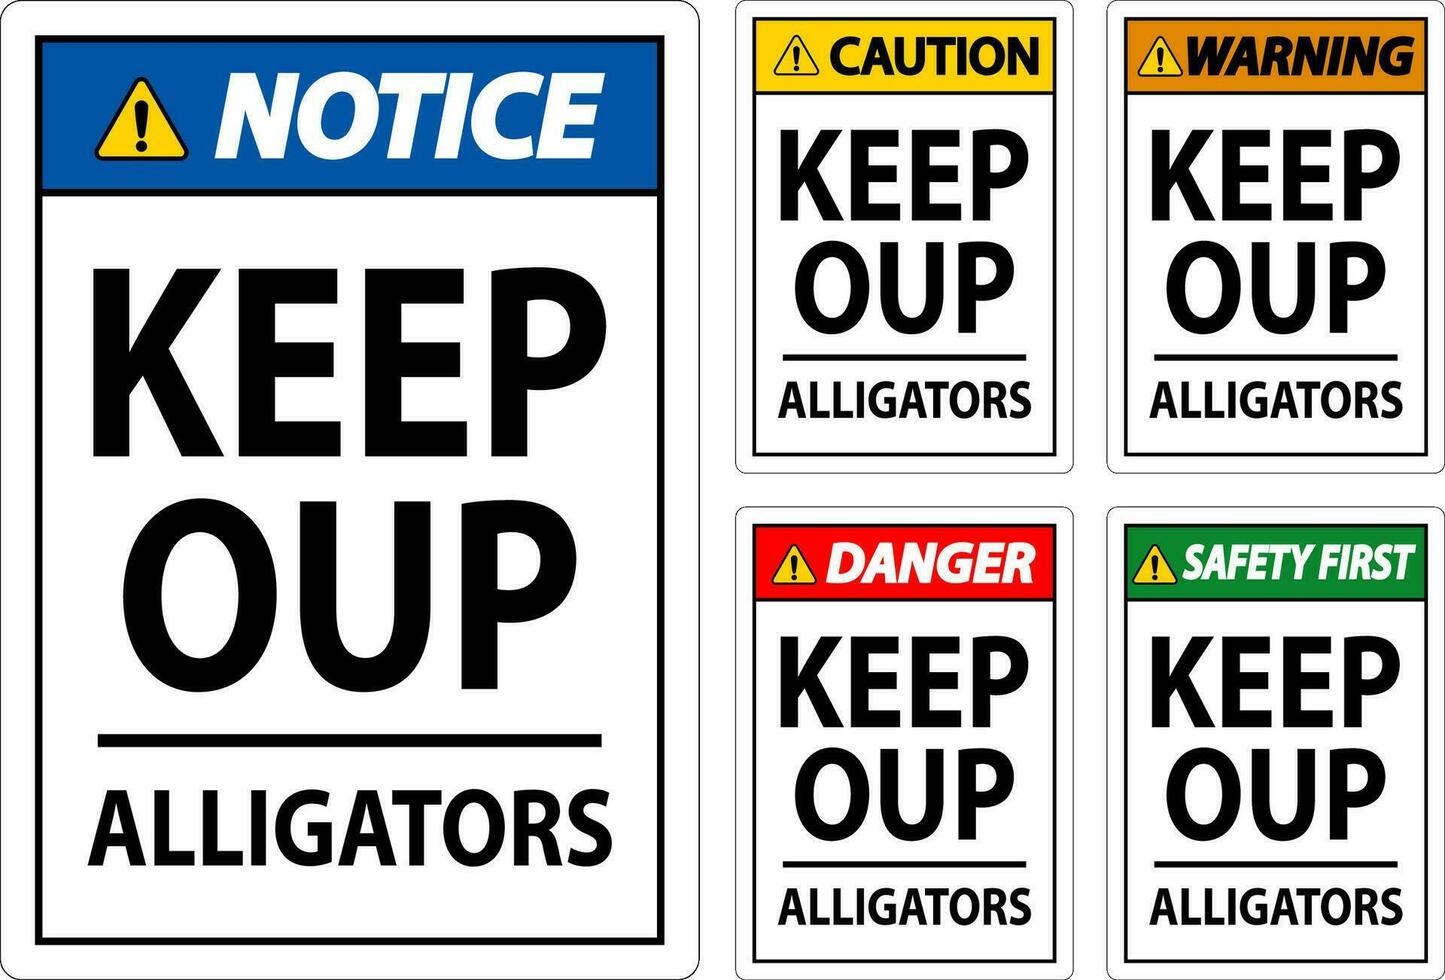 alligatore avvertimento cartello Pericolo mantenere su - alligatori vettore